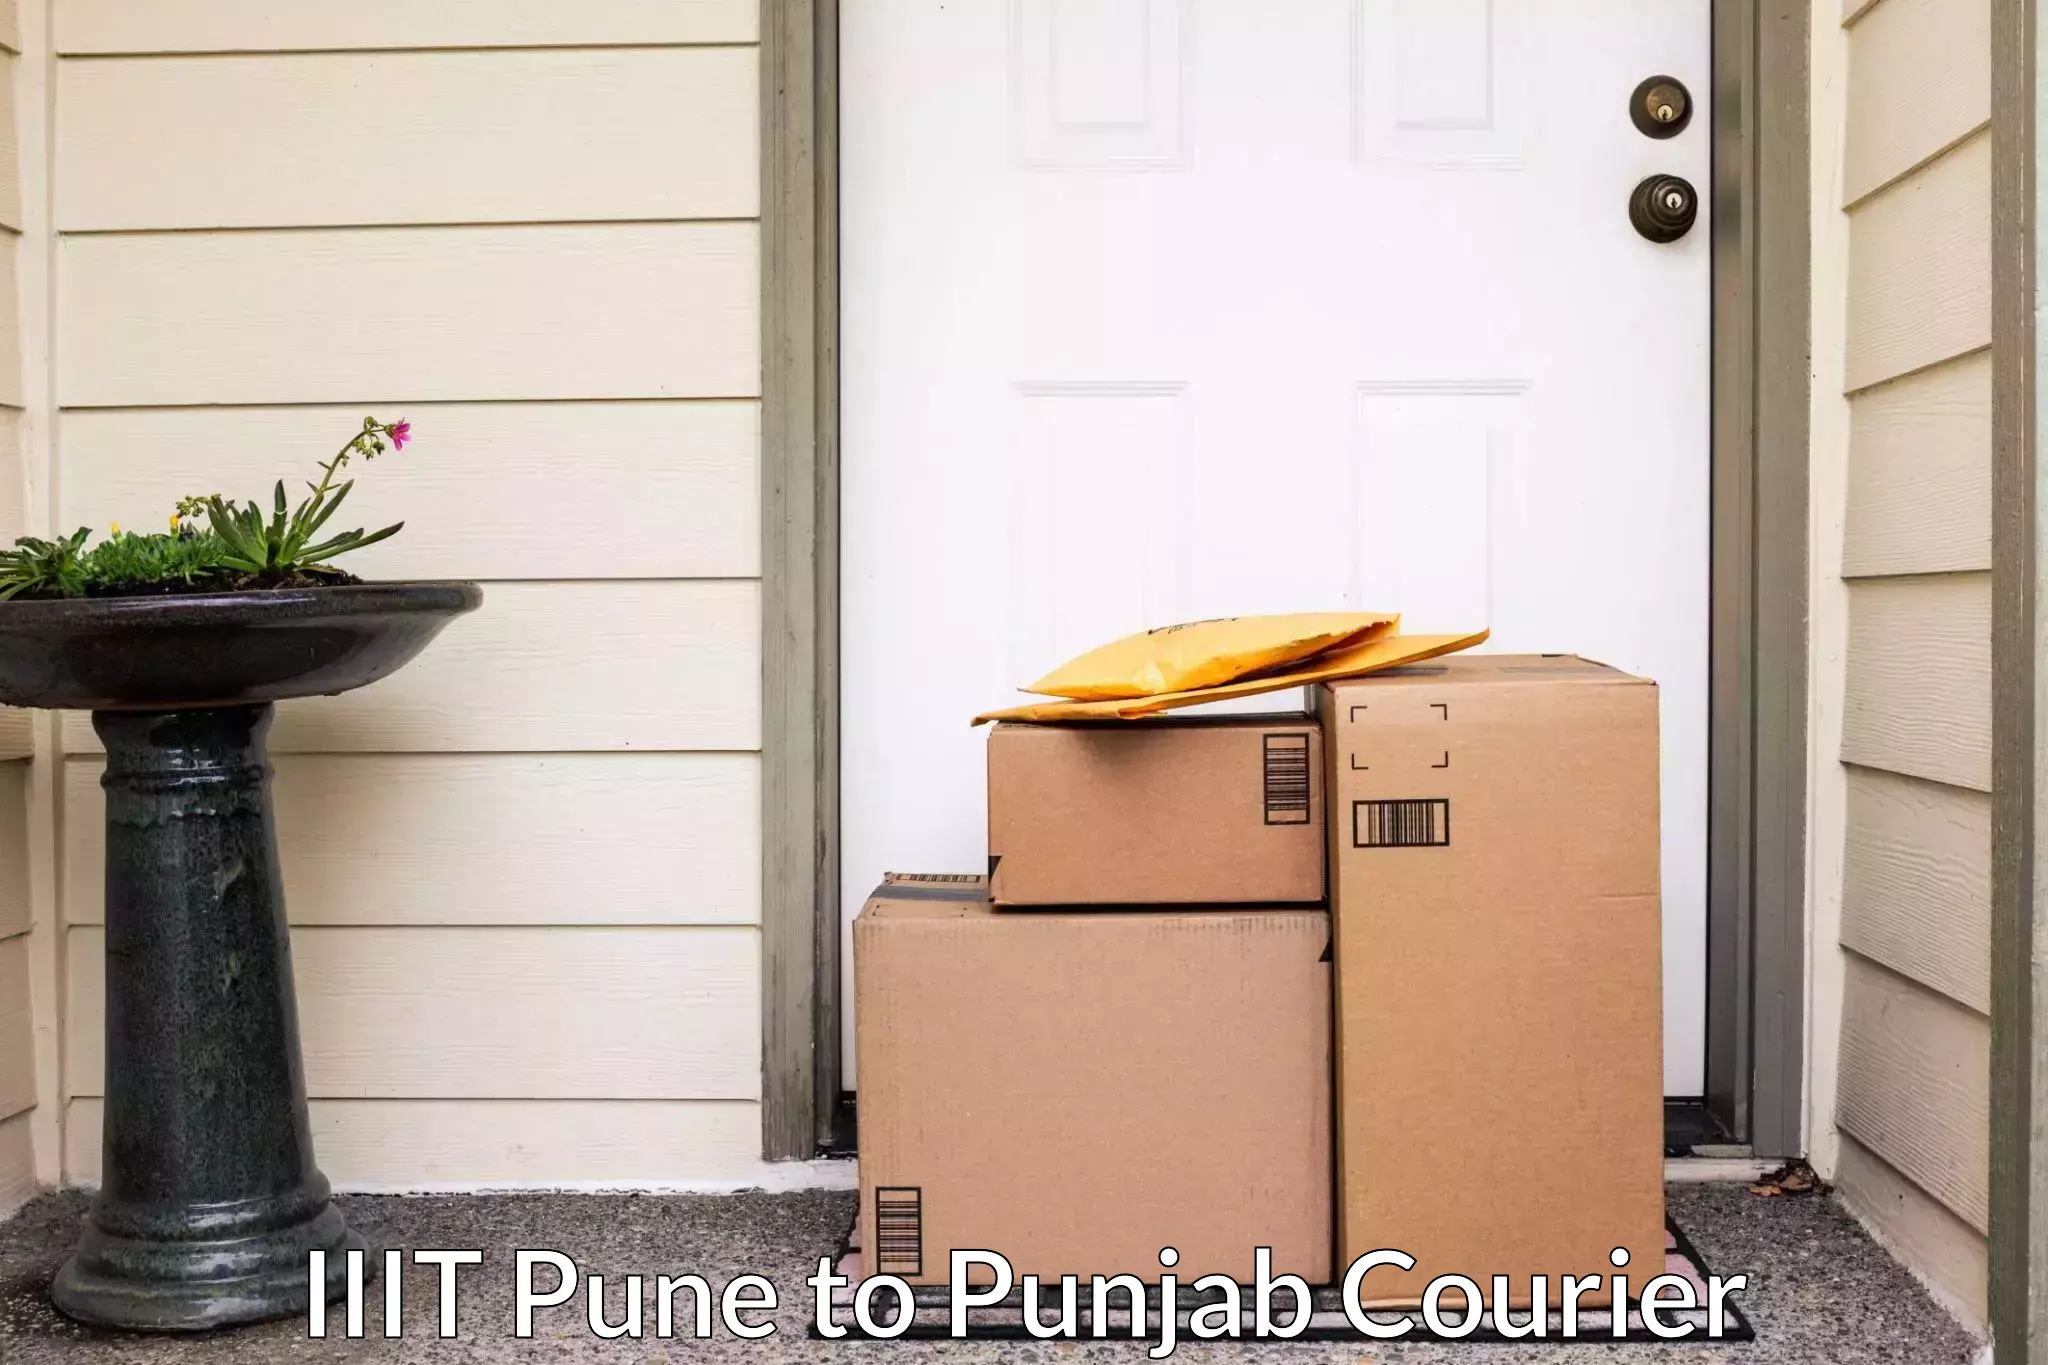 Furniture transport service IIIT Pune to Punjab